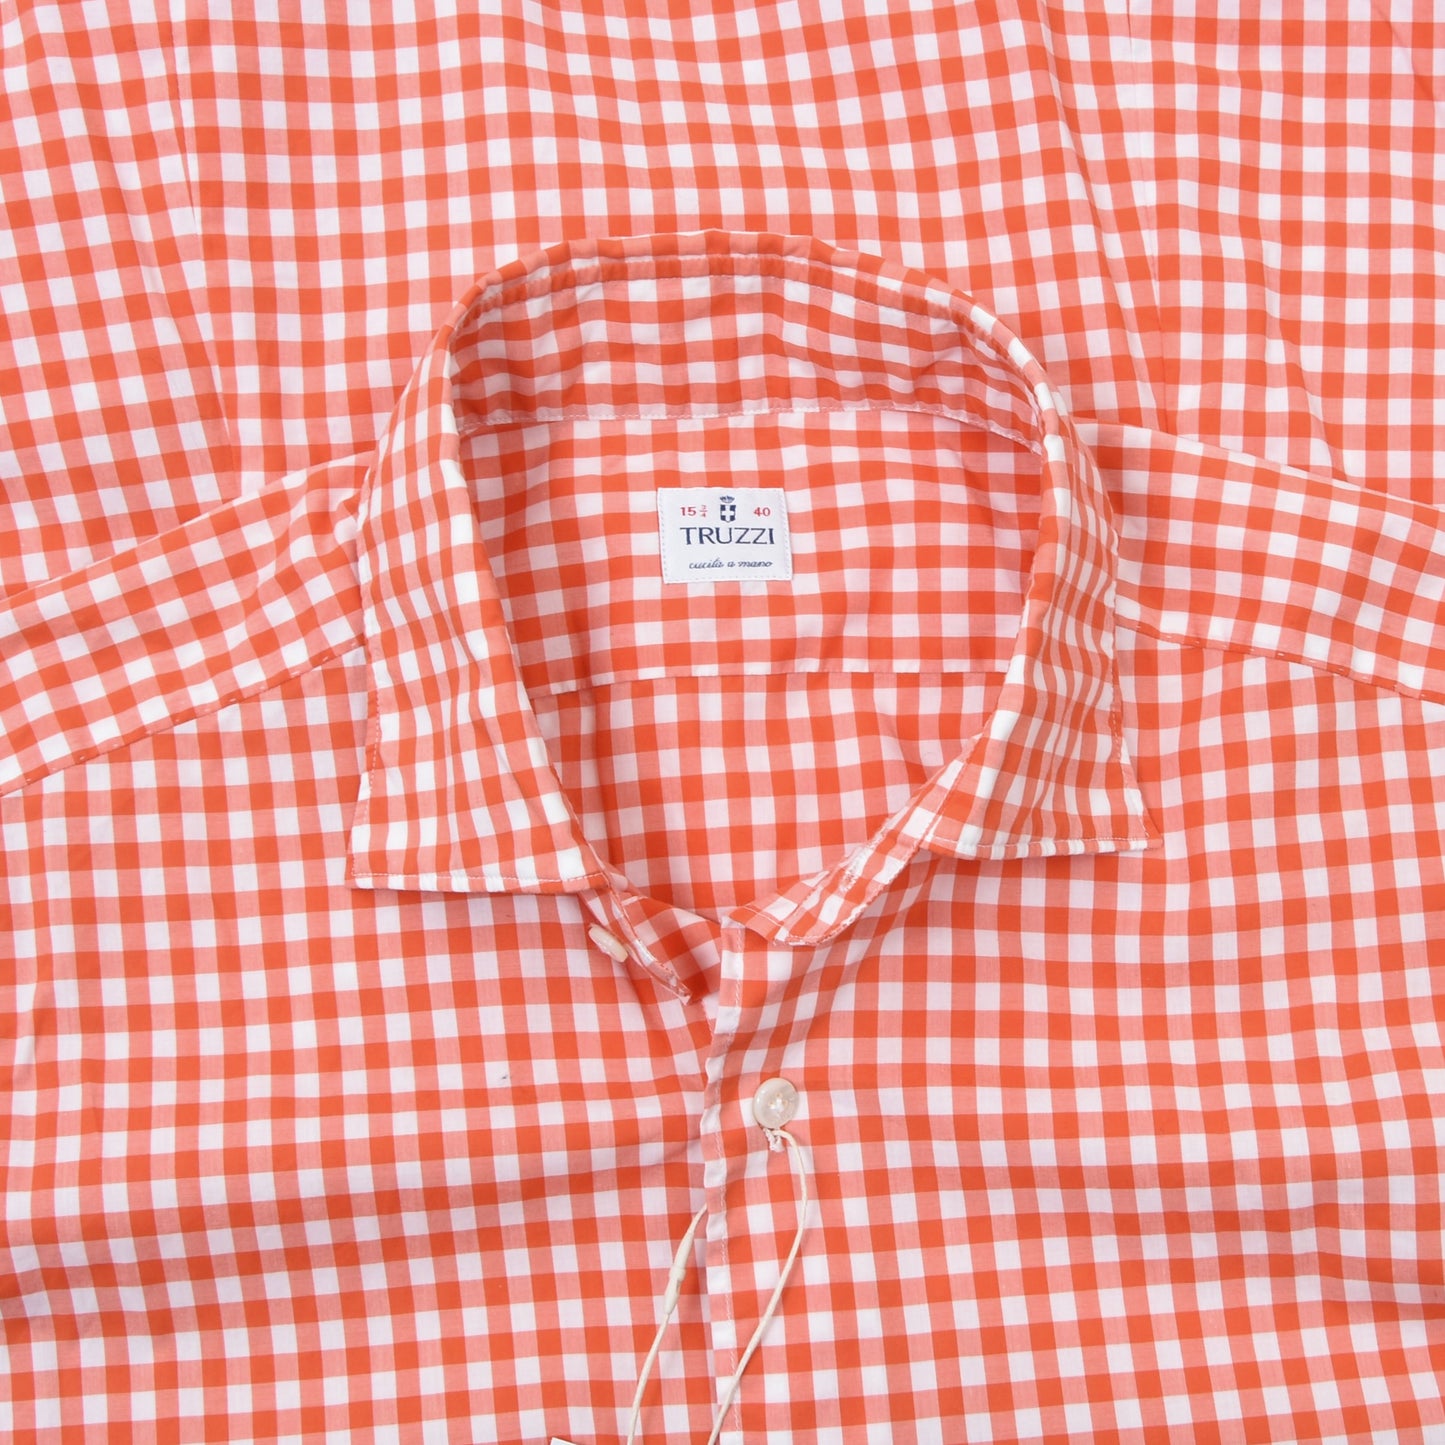 Truzzi Milano Shirt Size 40/15 3/4 - Orange & White